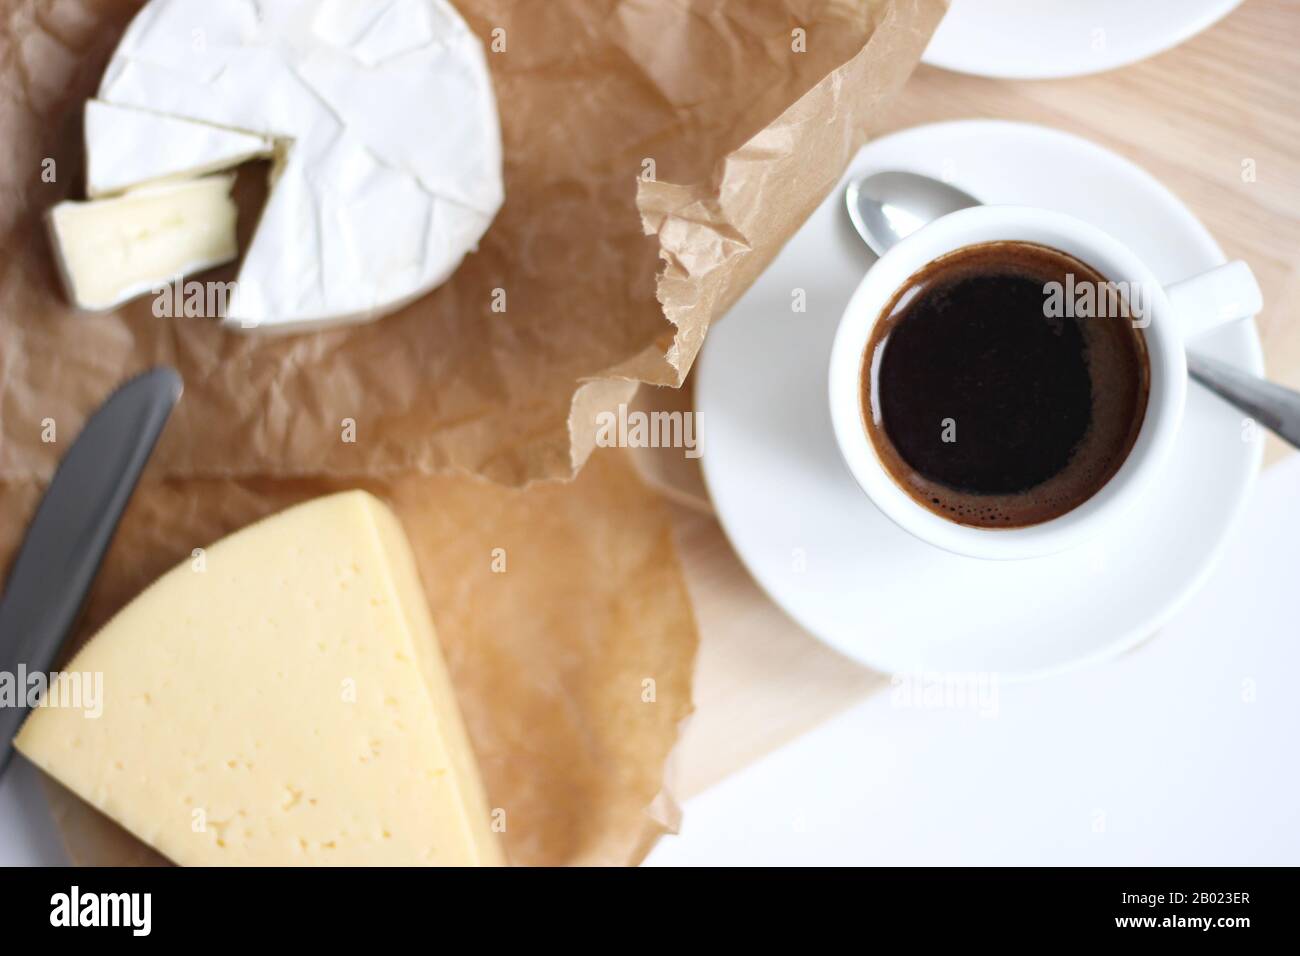 Französischer Käse. Köstliche französische Käsesorten mit einer Tasse Frischen schwarzen Kaffees. Styling von Lebensmitteln. Stockfoto